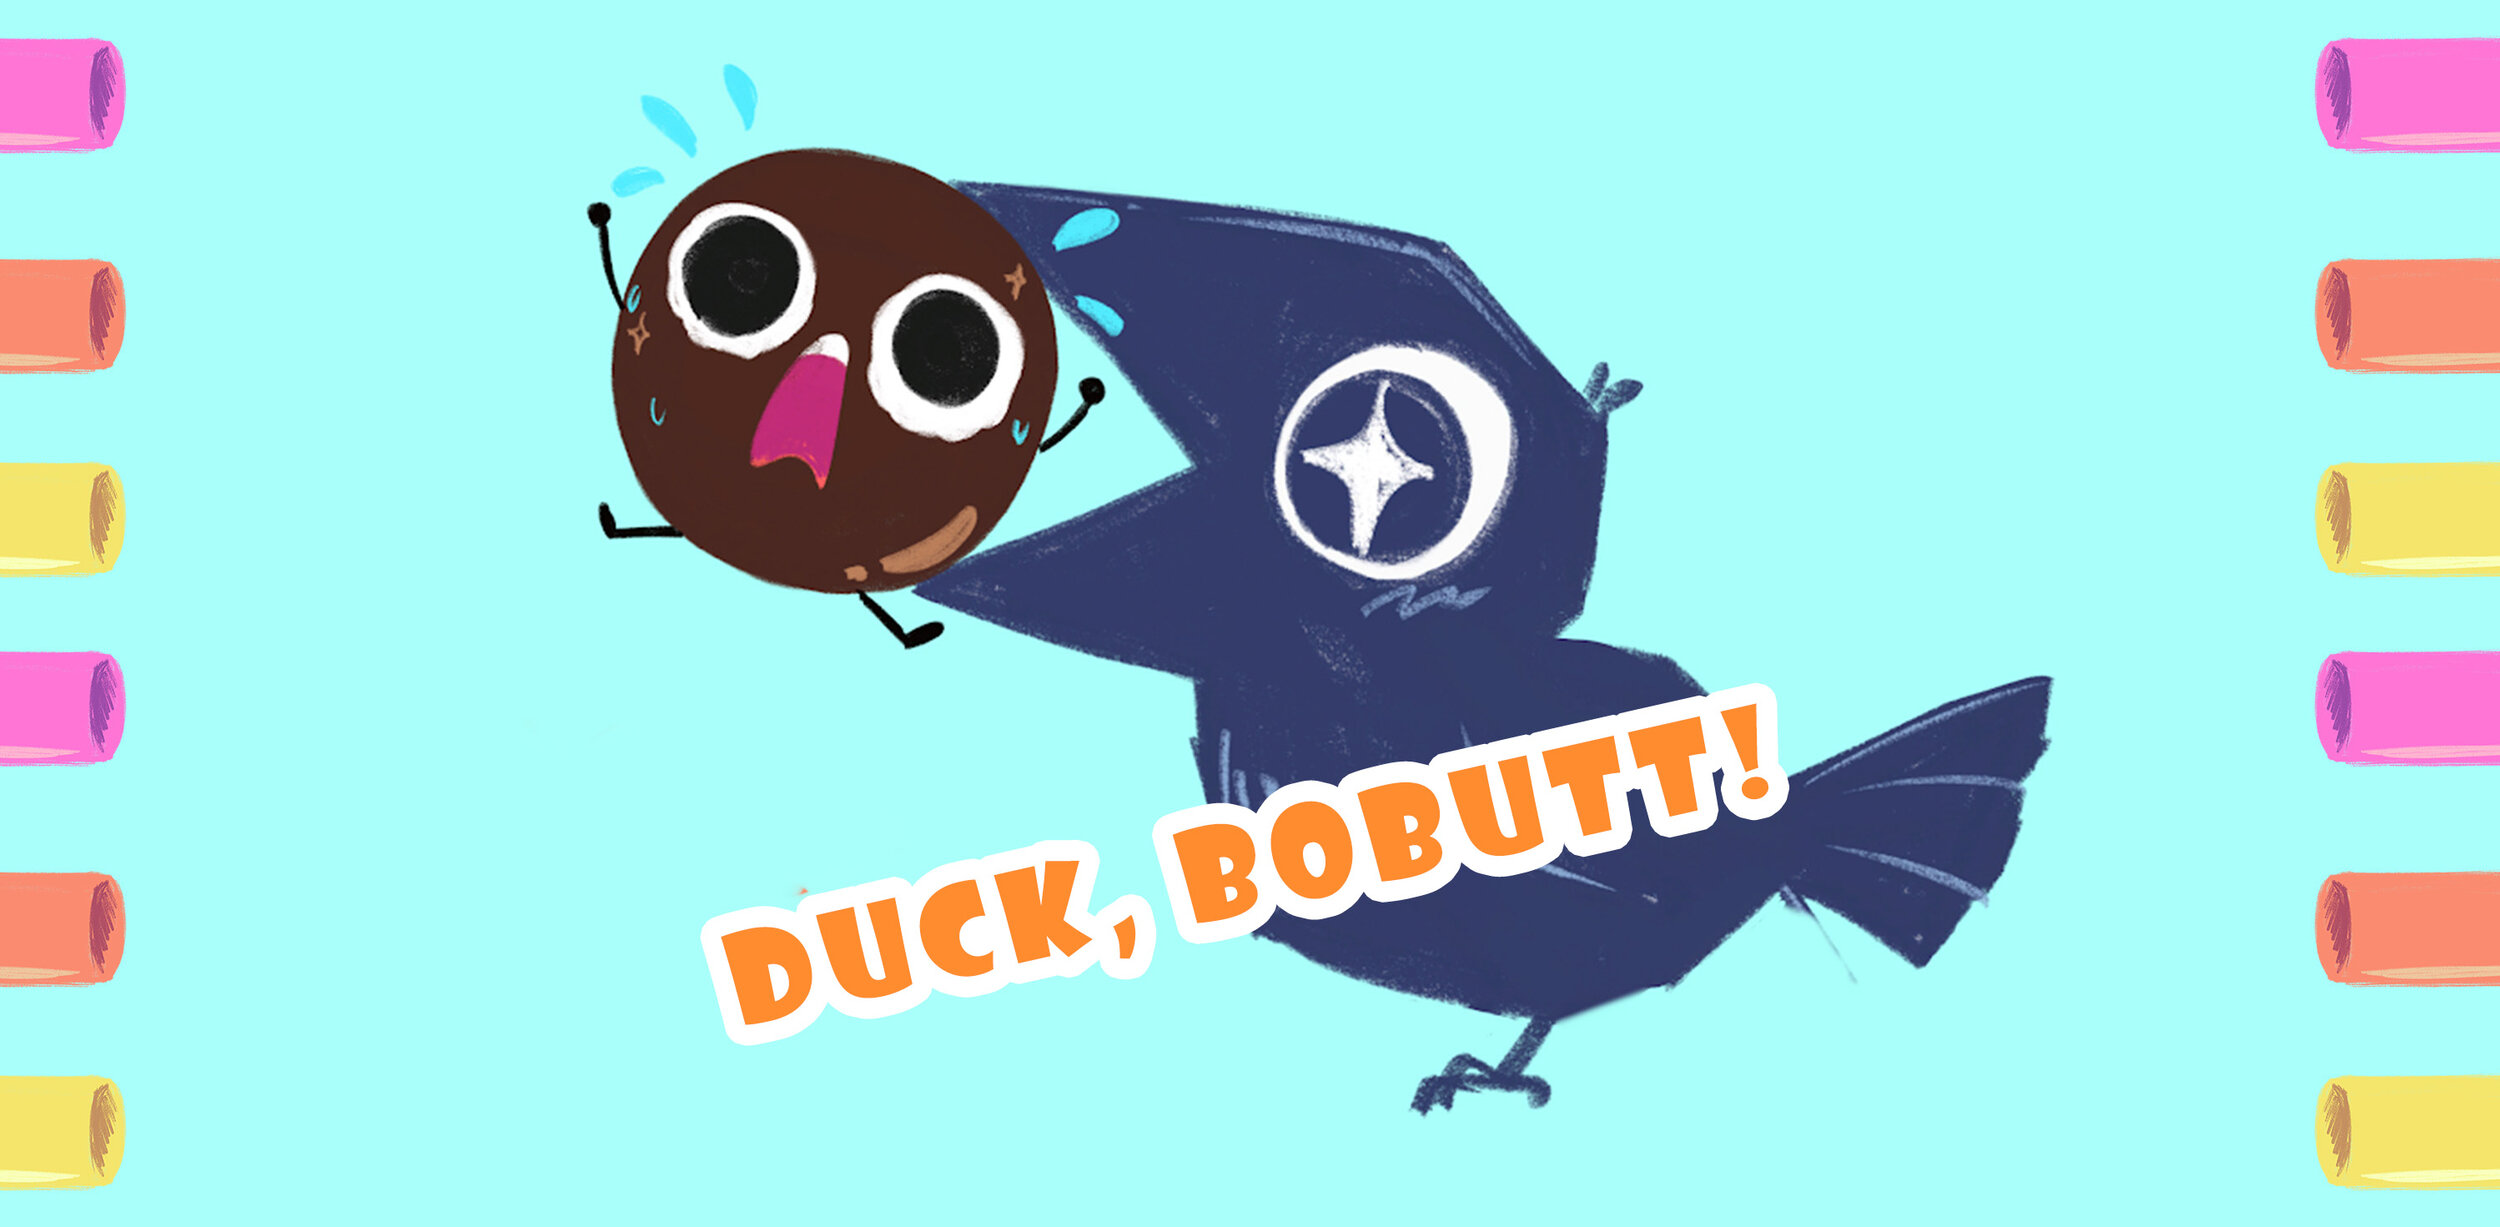 Duck, Bobutt!!